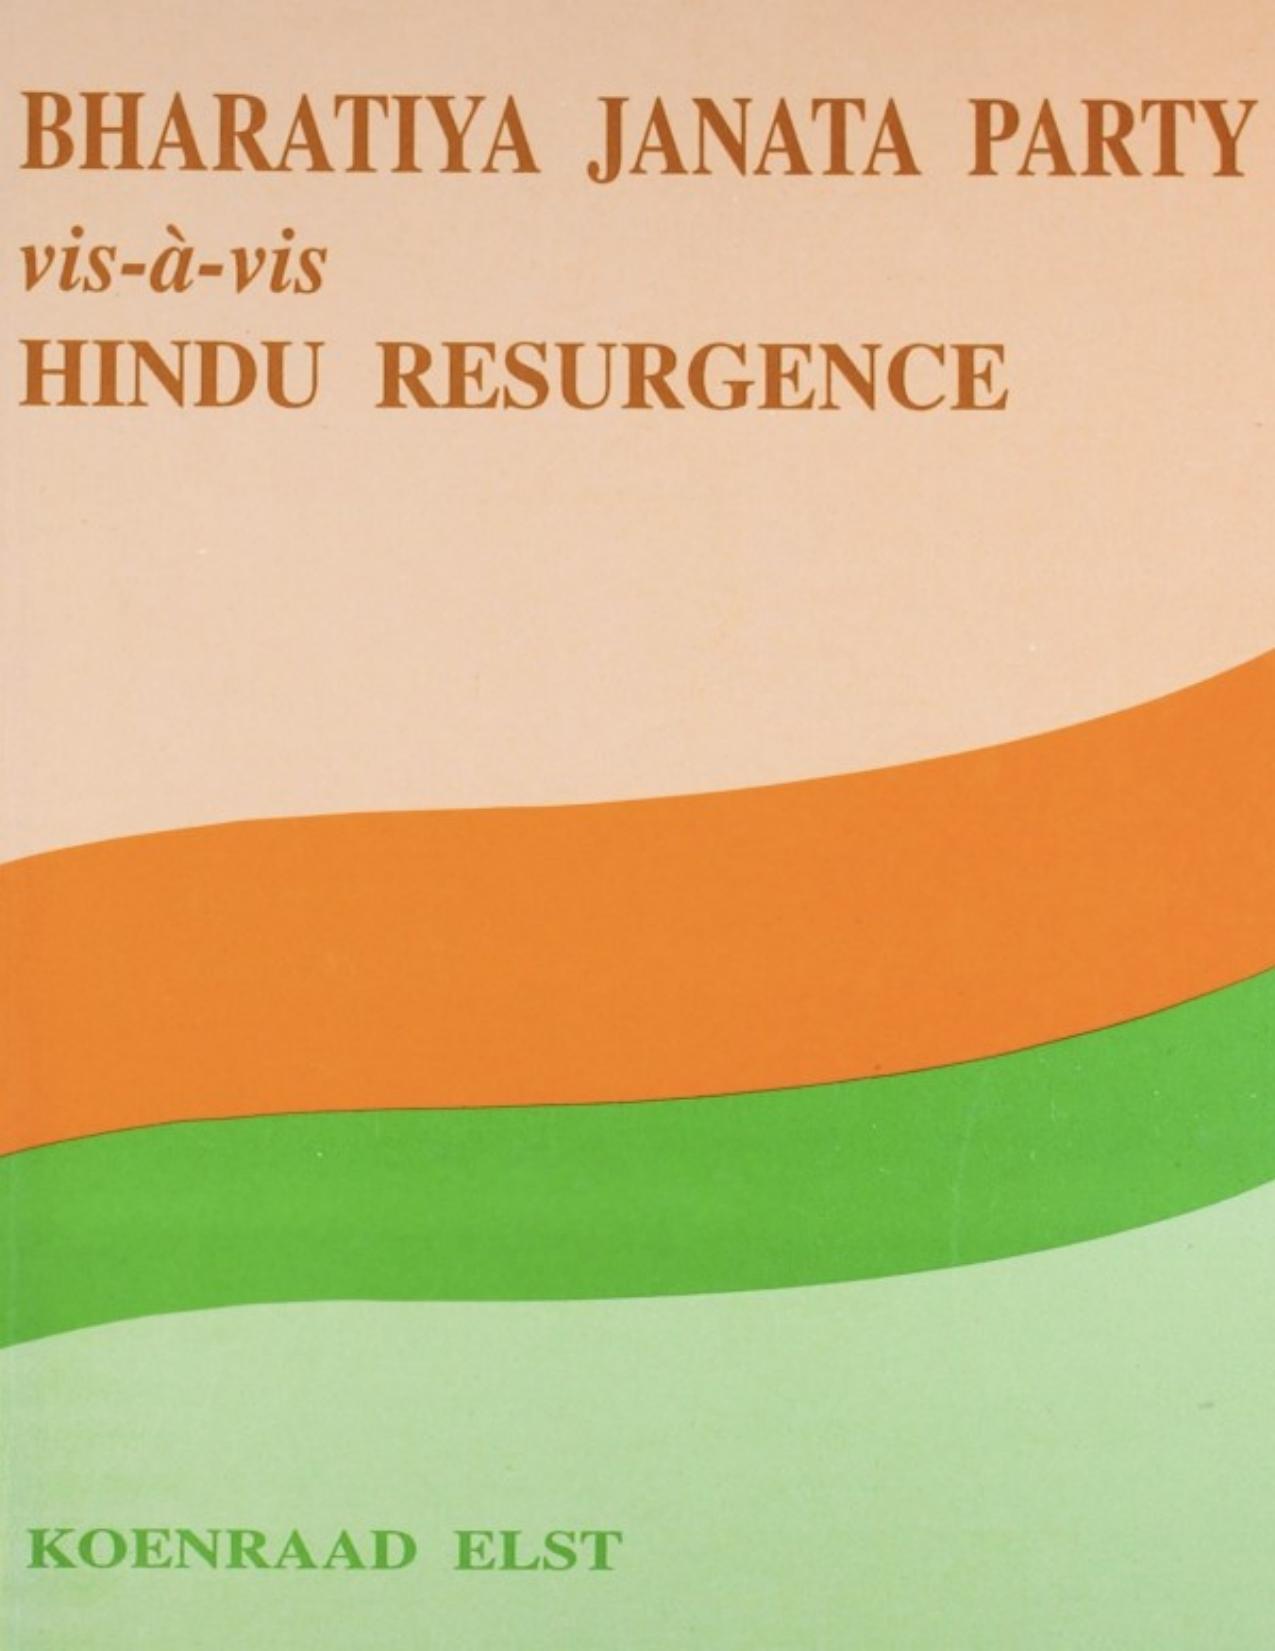 BJP Vis A Vis Hindu Resurgence by Koenraad Elst